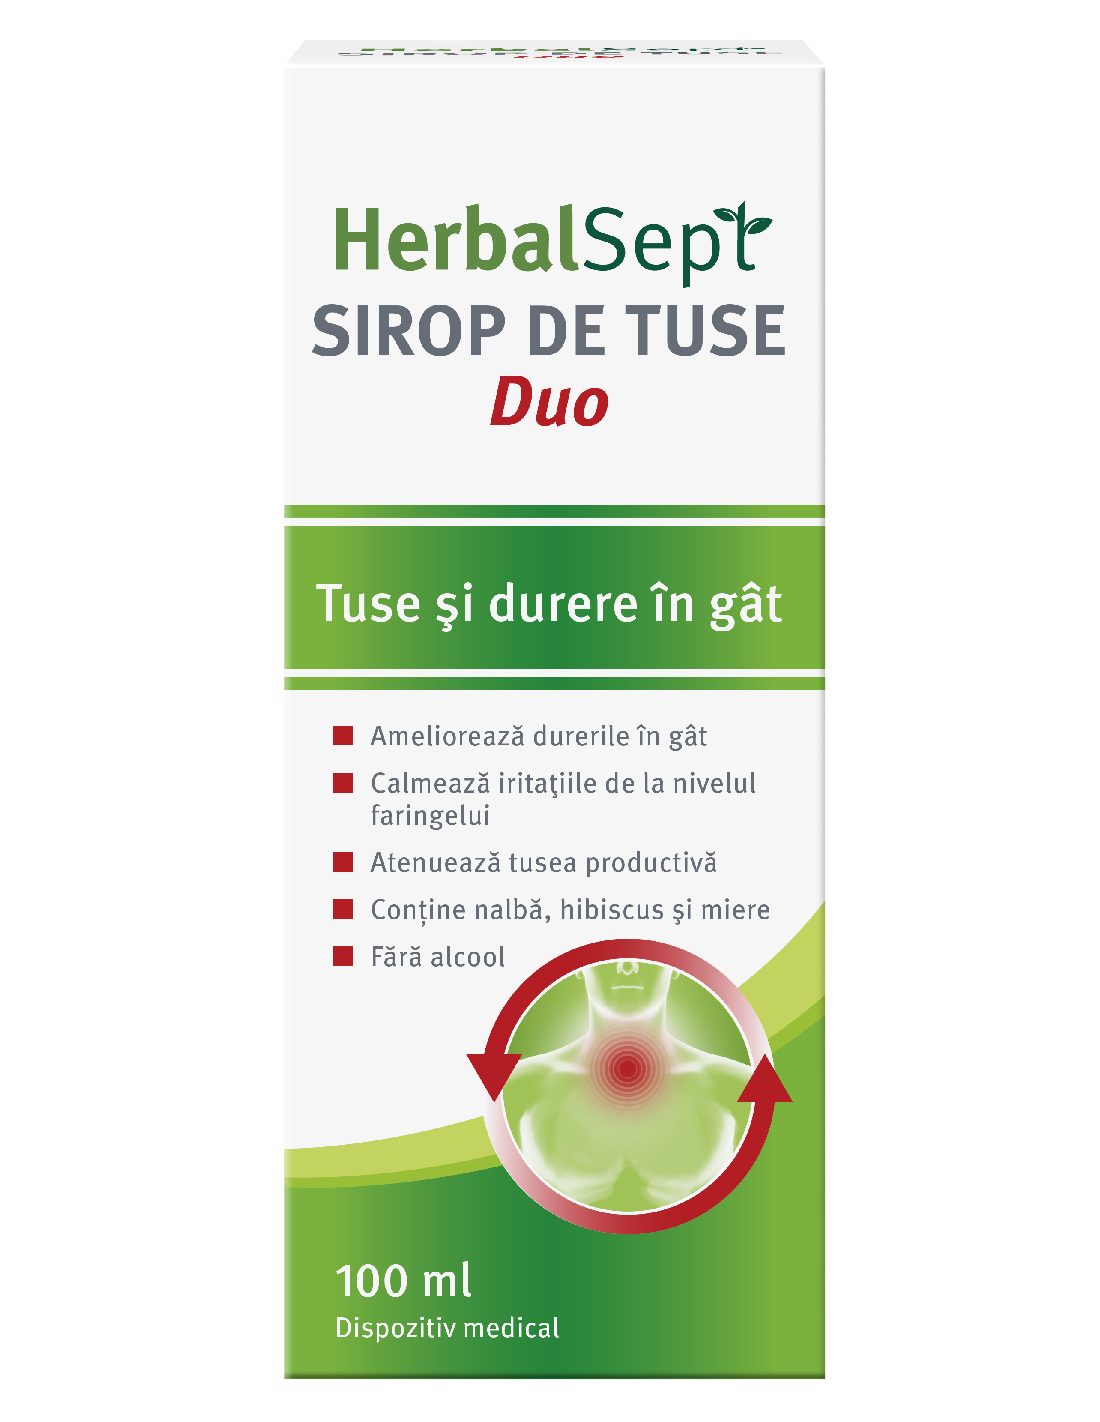 Sirop de tuse HerbalSept Duo, 100 ml, Zdrovit - TUSE - ZDROVIT